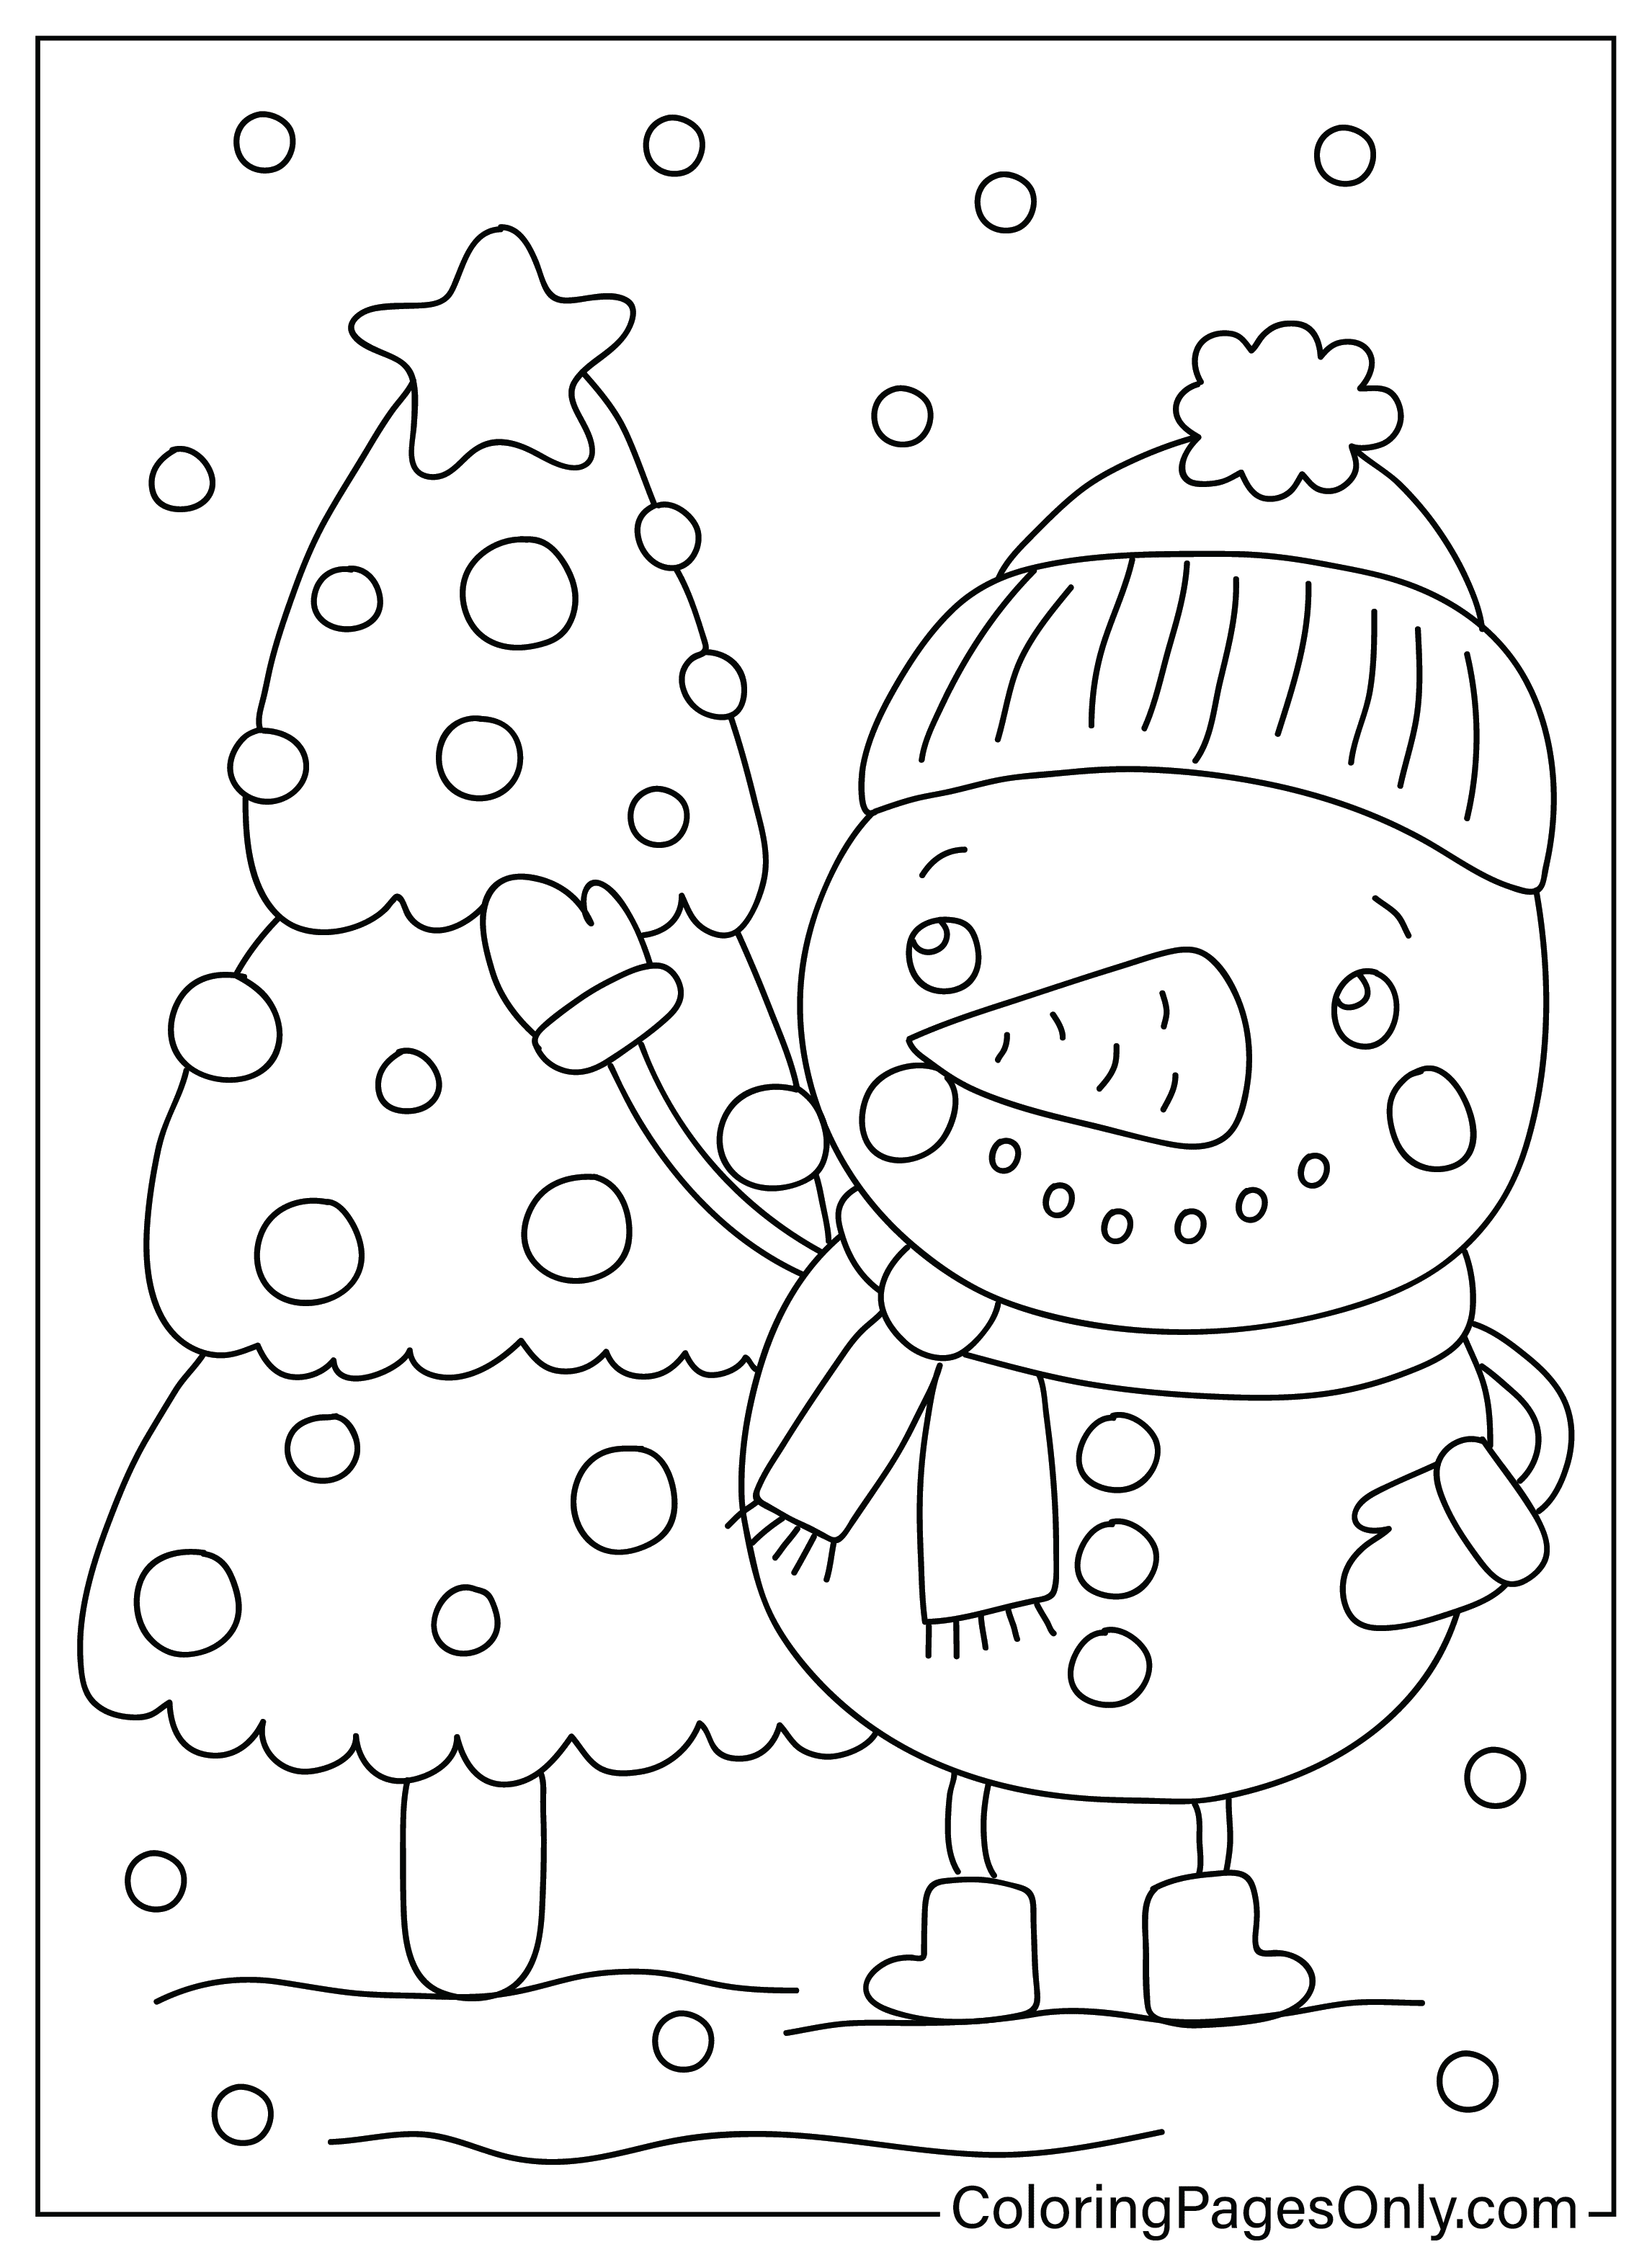 可爱的圣诞节的可爱雪人圣诞彩页